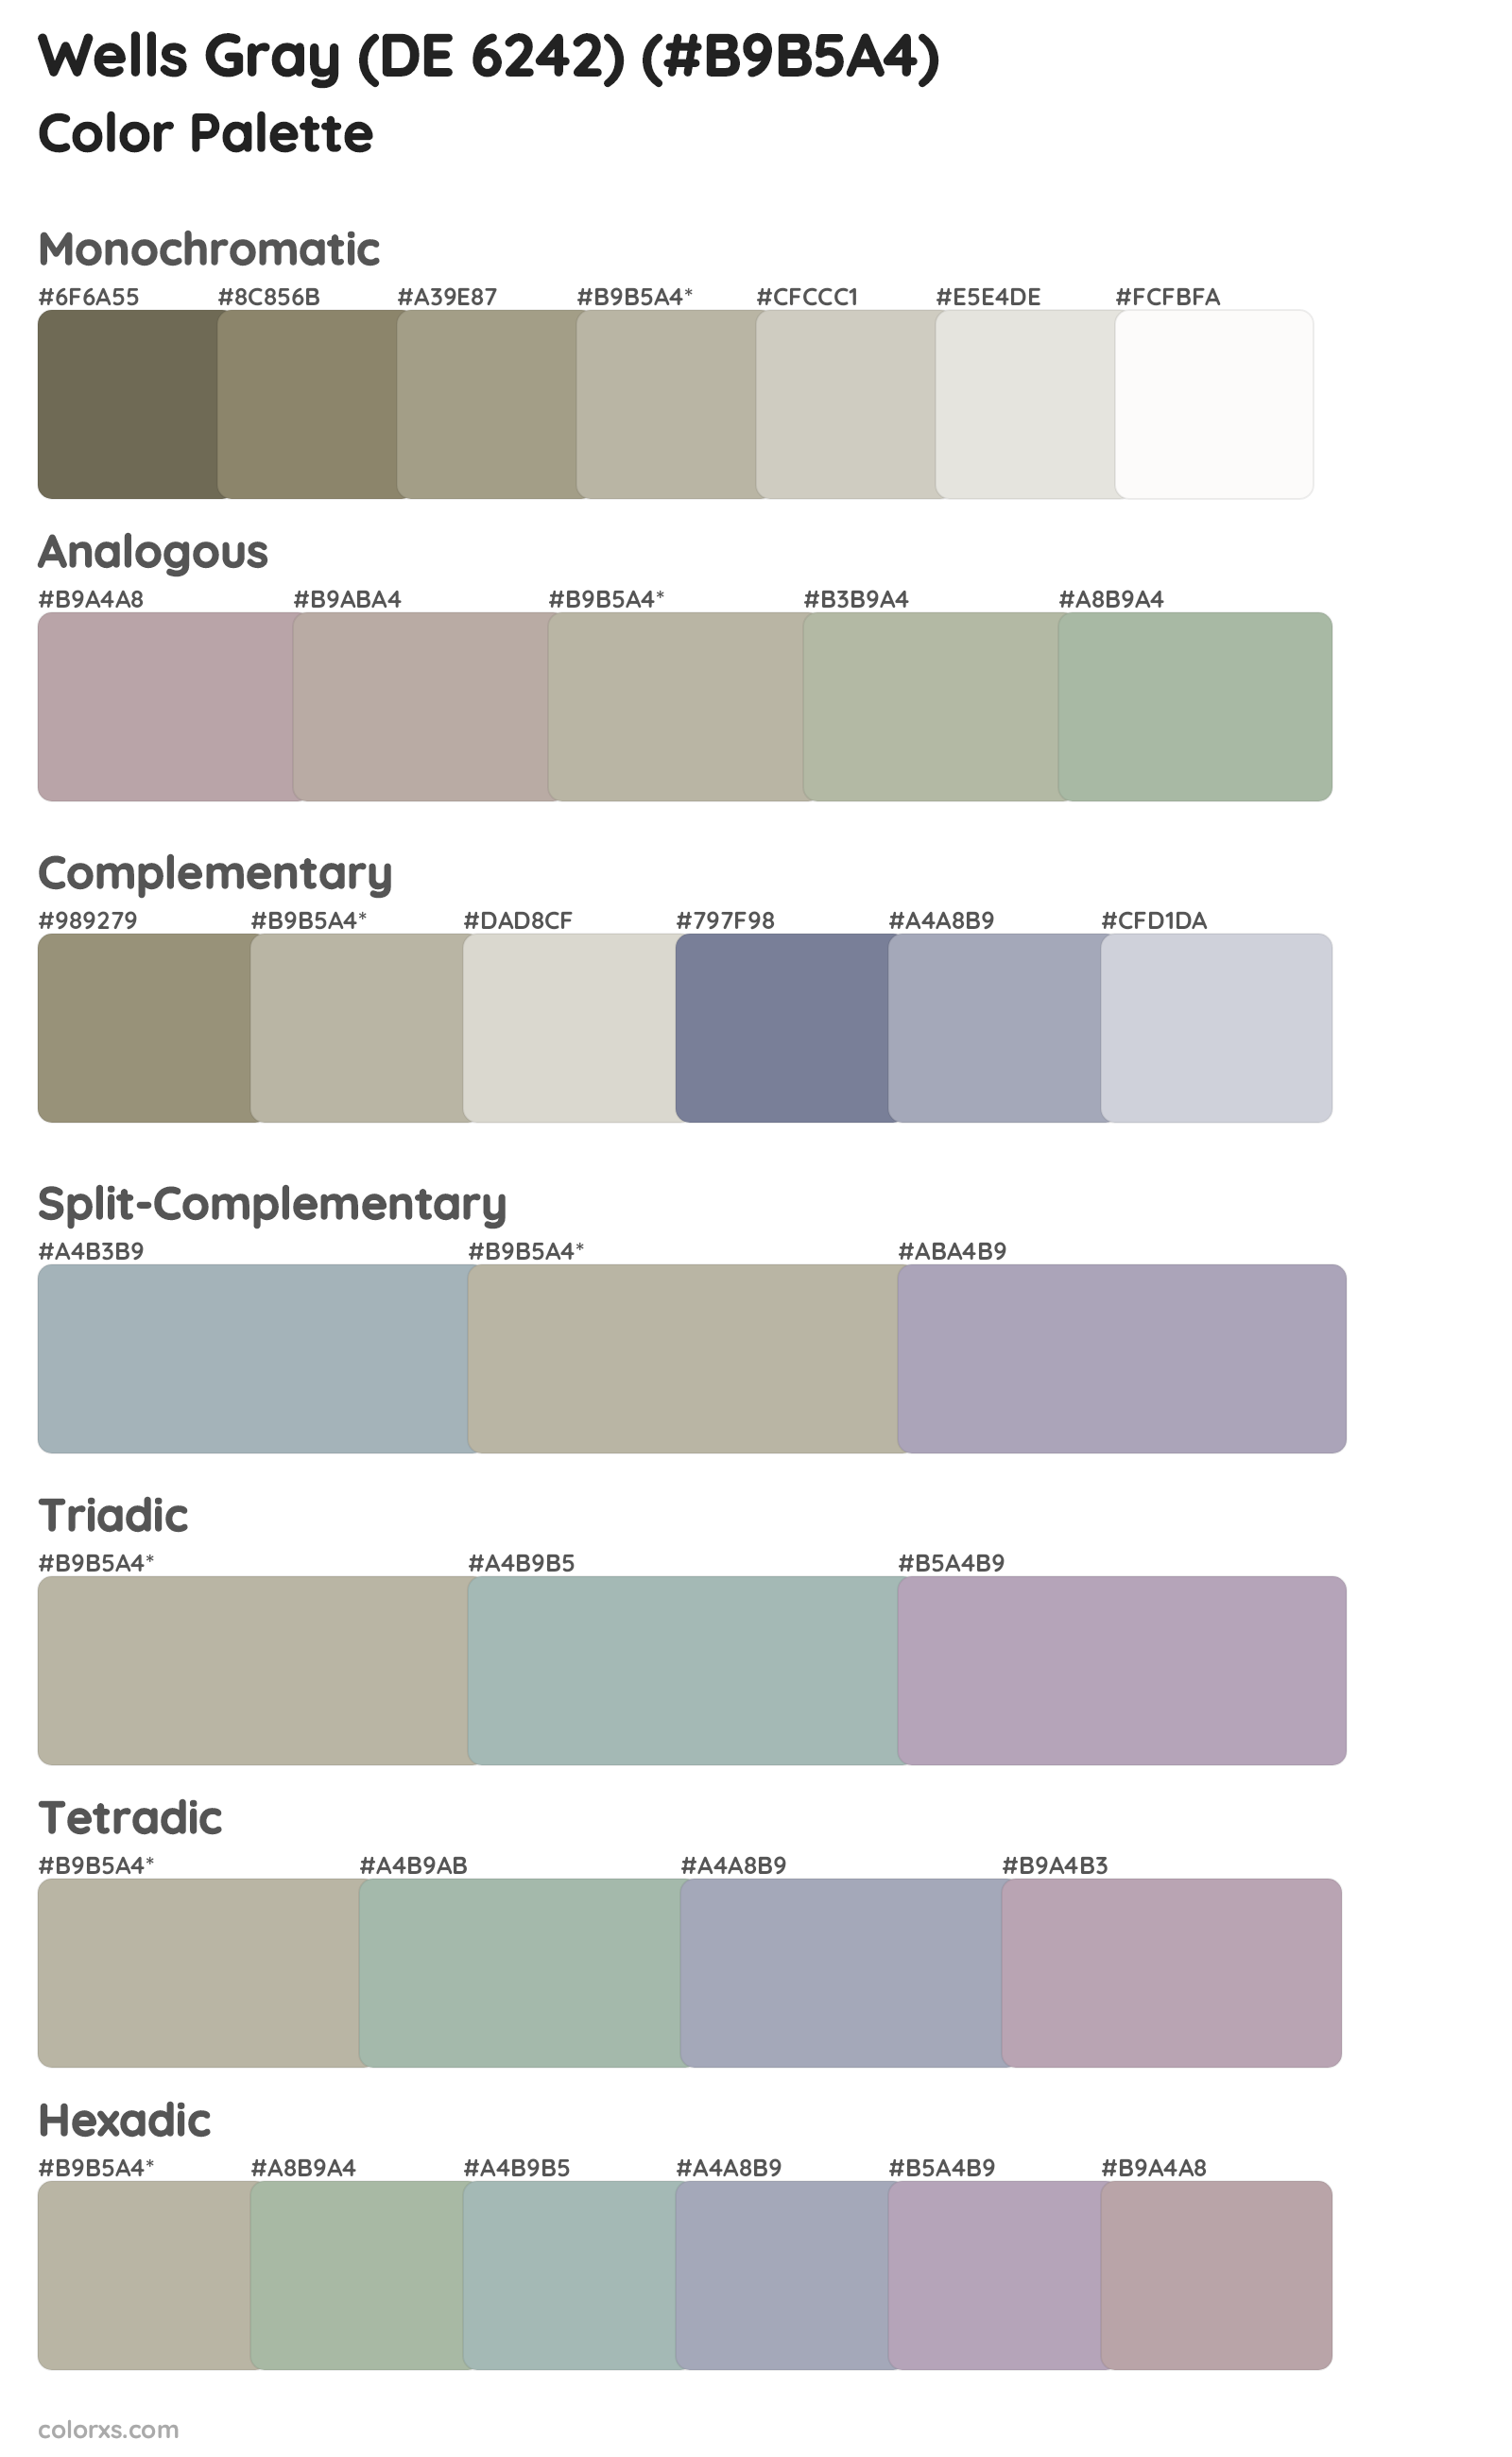 Wells Gray (DE 6242) Color Scheme Palettes